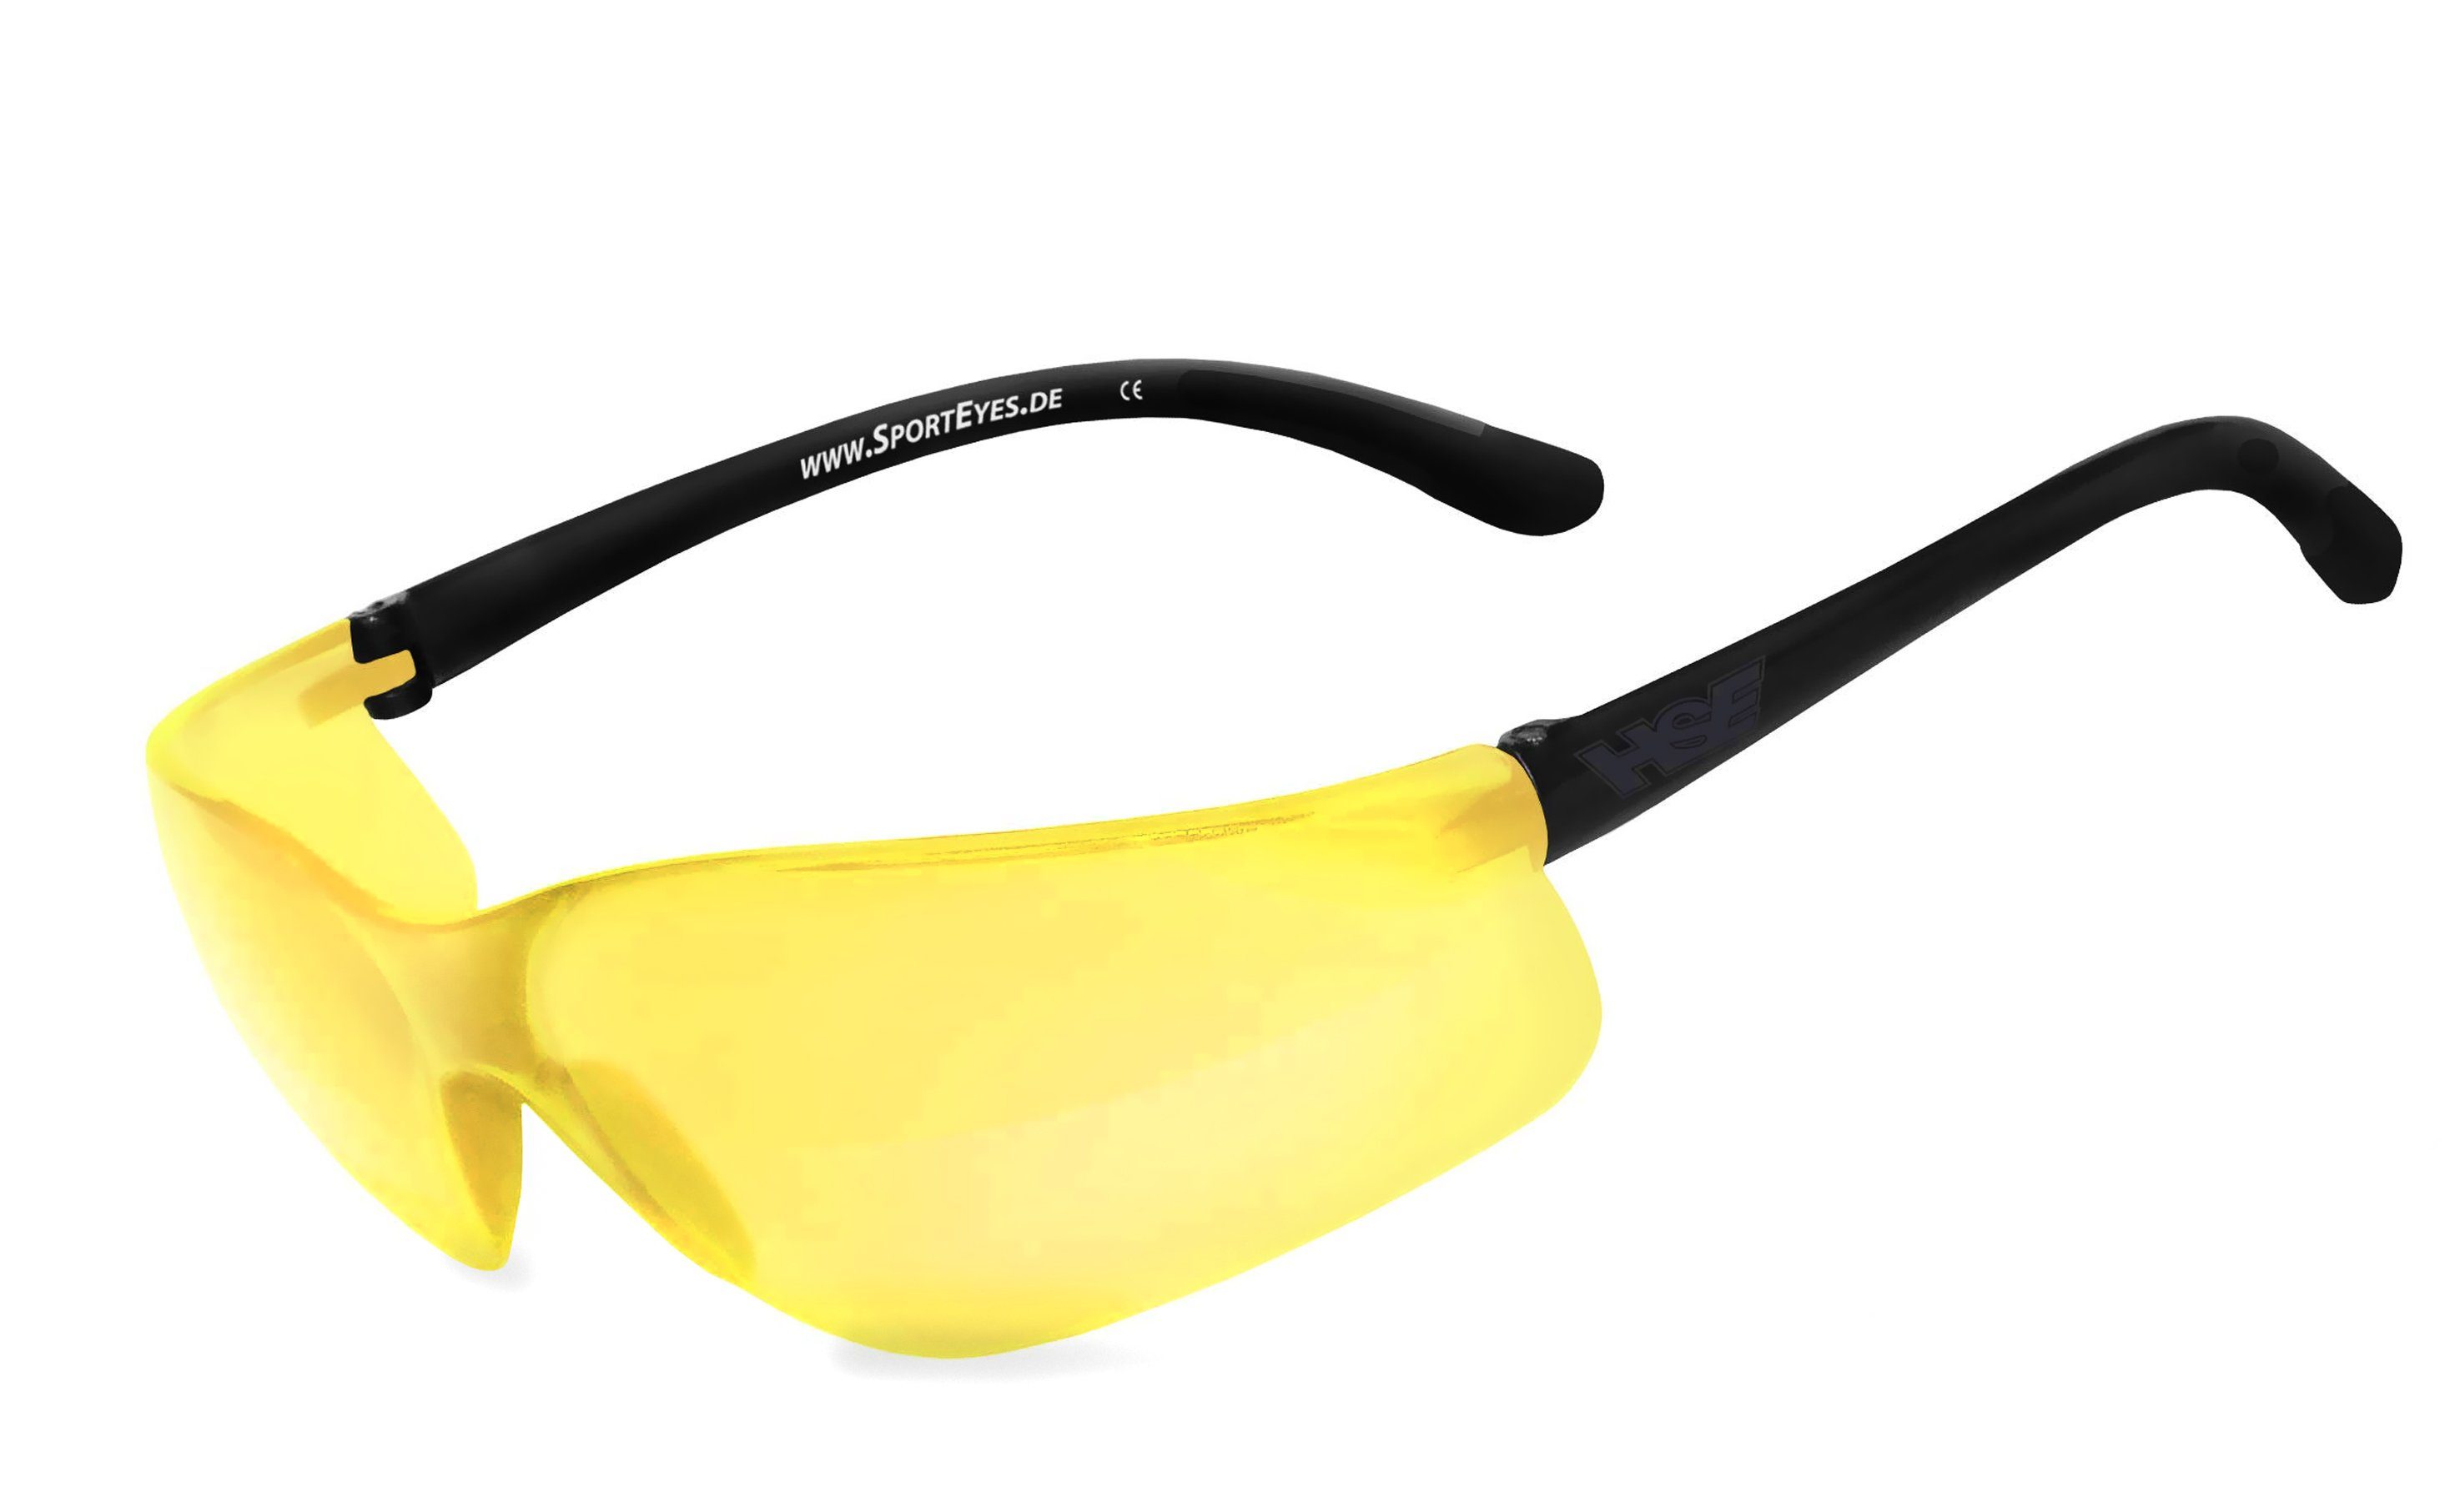 HSE - SportEyes Sportbrille DEFENDER 1.0, durch Kunststoff-Sicherheitsglas Steinschlagbeständig